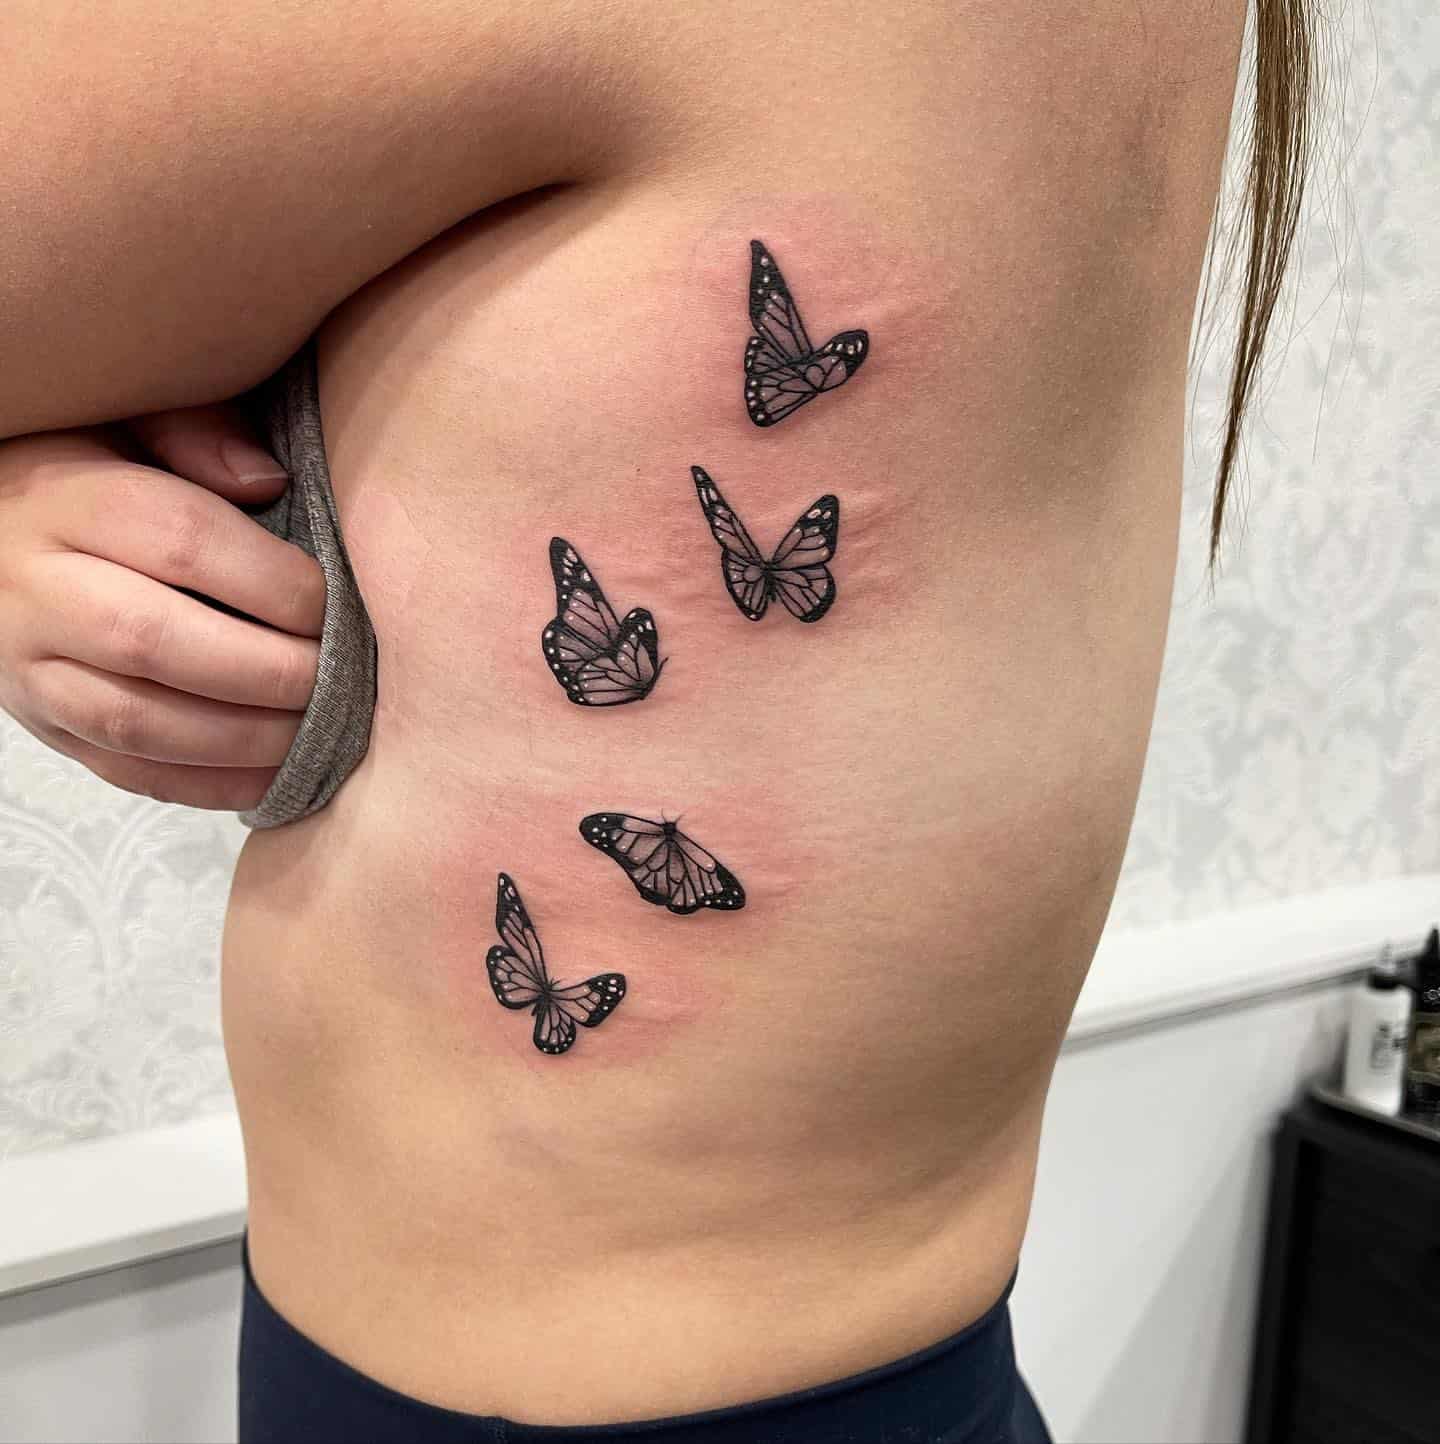 Butterfly side tattoo 1